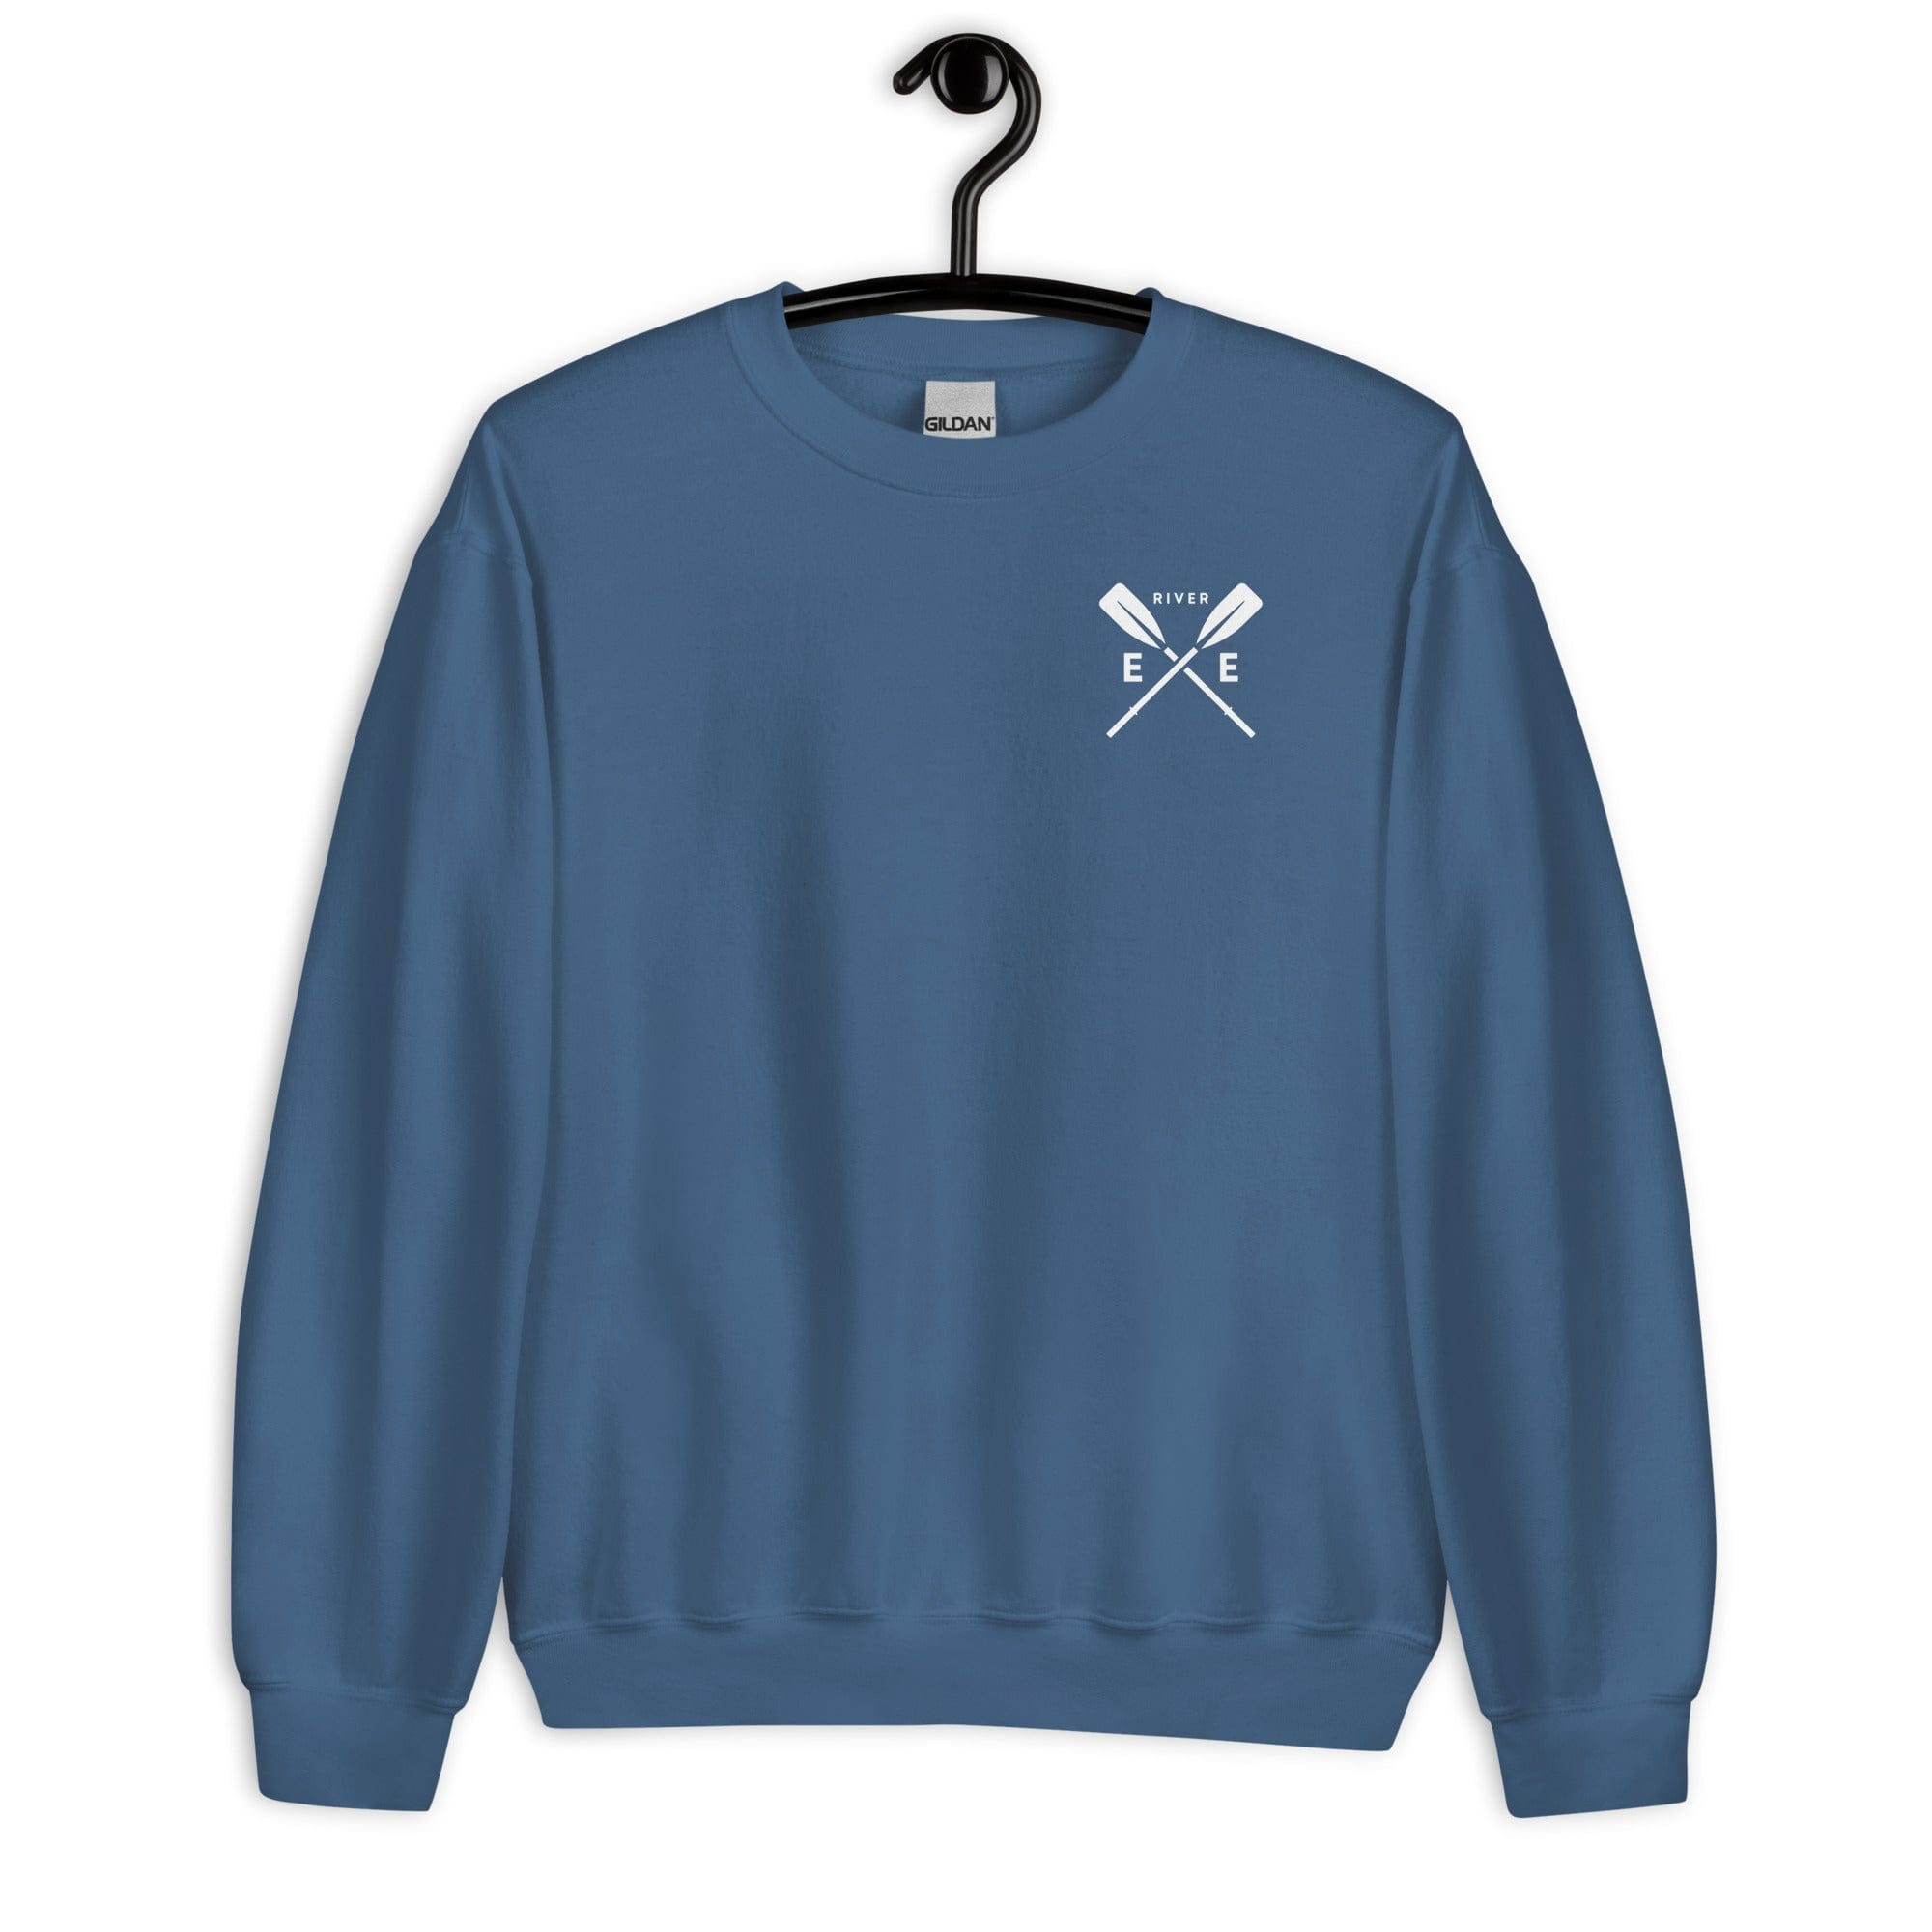 River Exe Sweatshirt Jumper | Exeter Gift Shop Sweatshirt Jolly & Goode